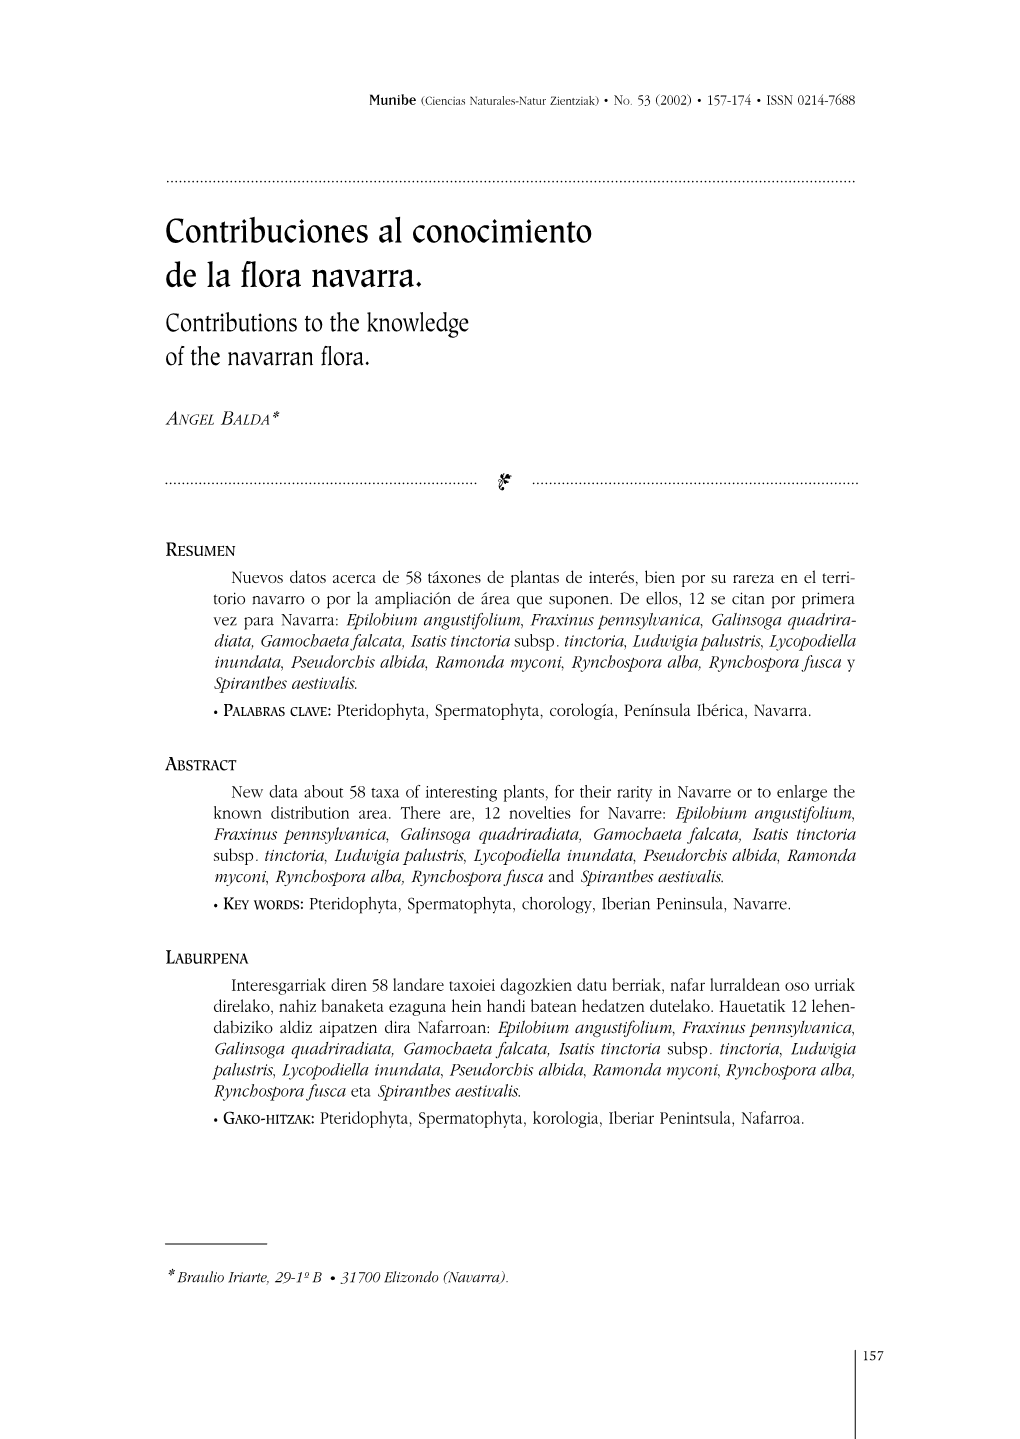 Contribuciones Al Conocimiento De La Flora Navarra. Contributions to the Knowledge of the Navarran Flora